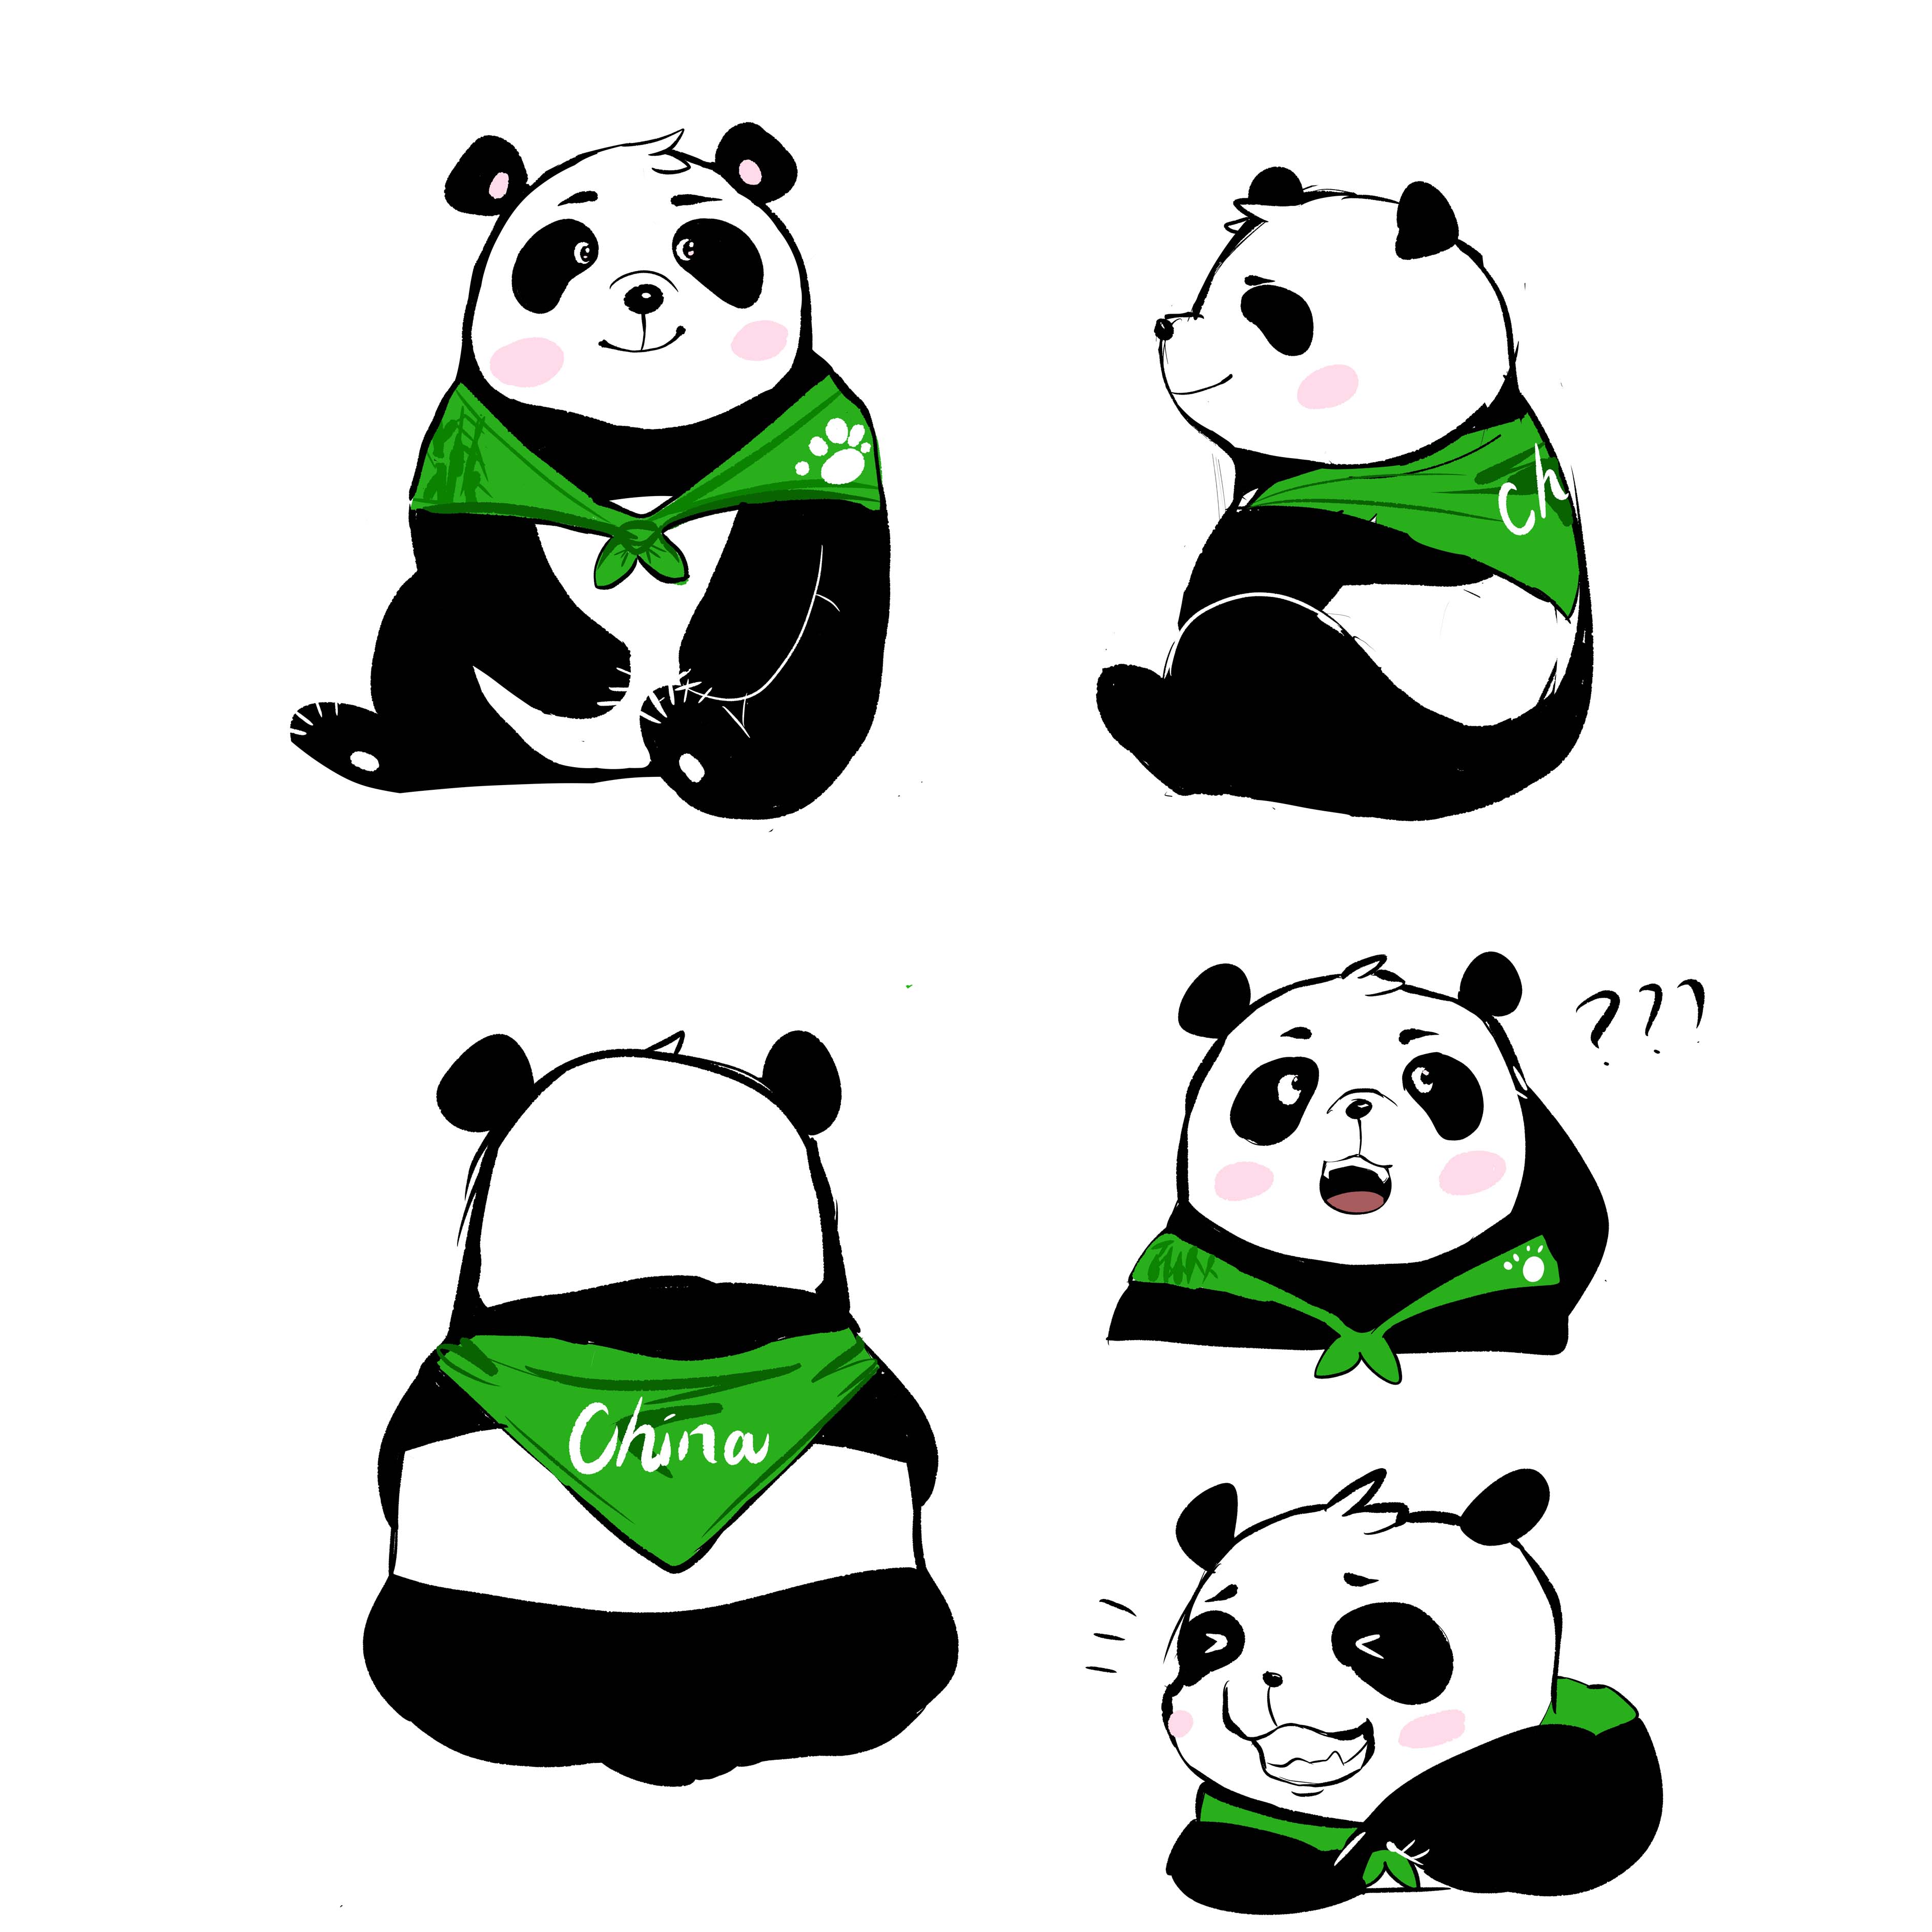 中国大熊猫国际形象汤圆